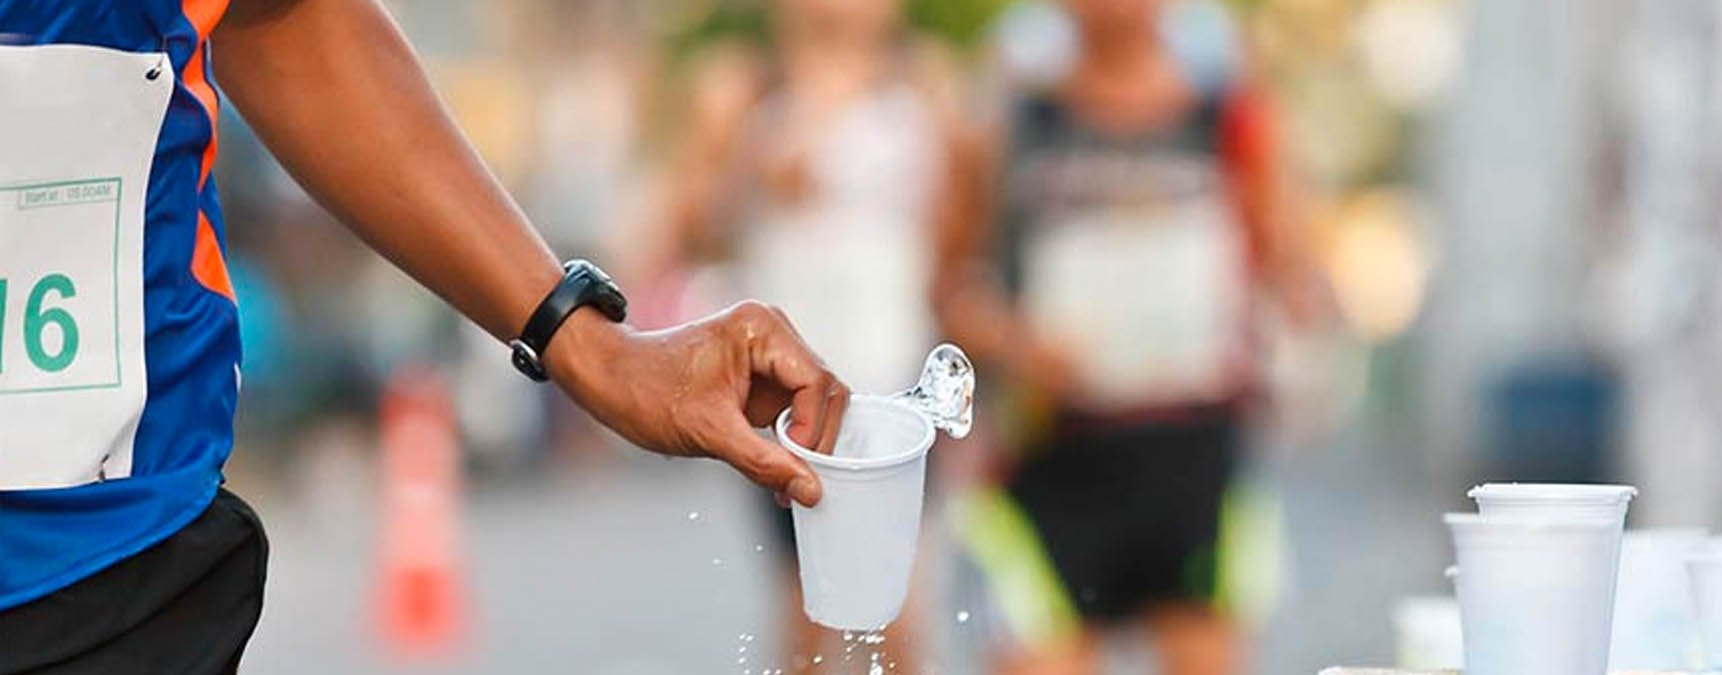 Deshidratación en los deportes de larga duración: cómo evitarla